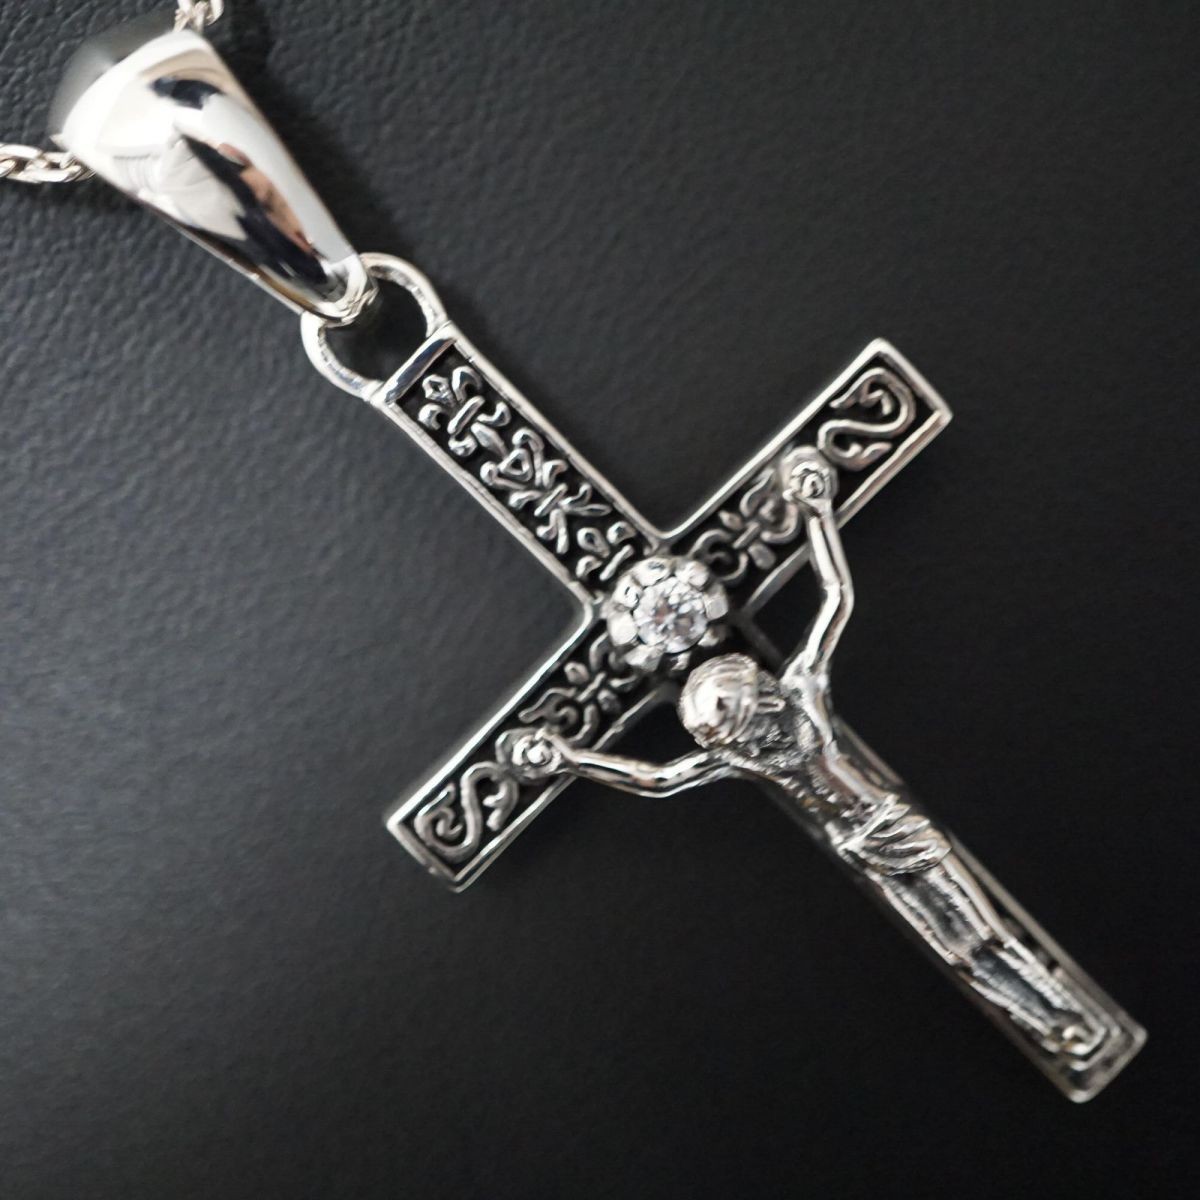 シルバー925 ネックレス クロス 十字架 カトリック ペンダント キリスト 銀925 k0126